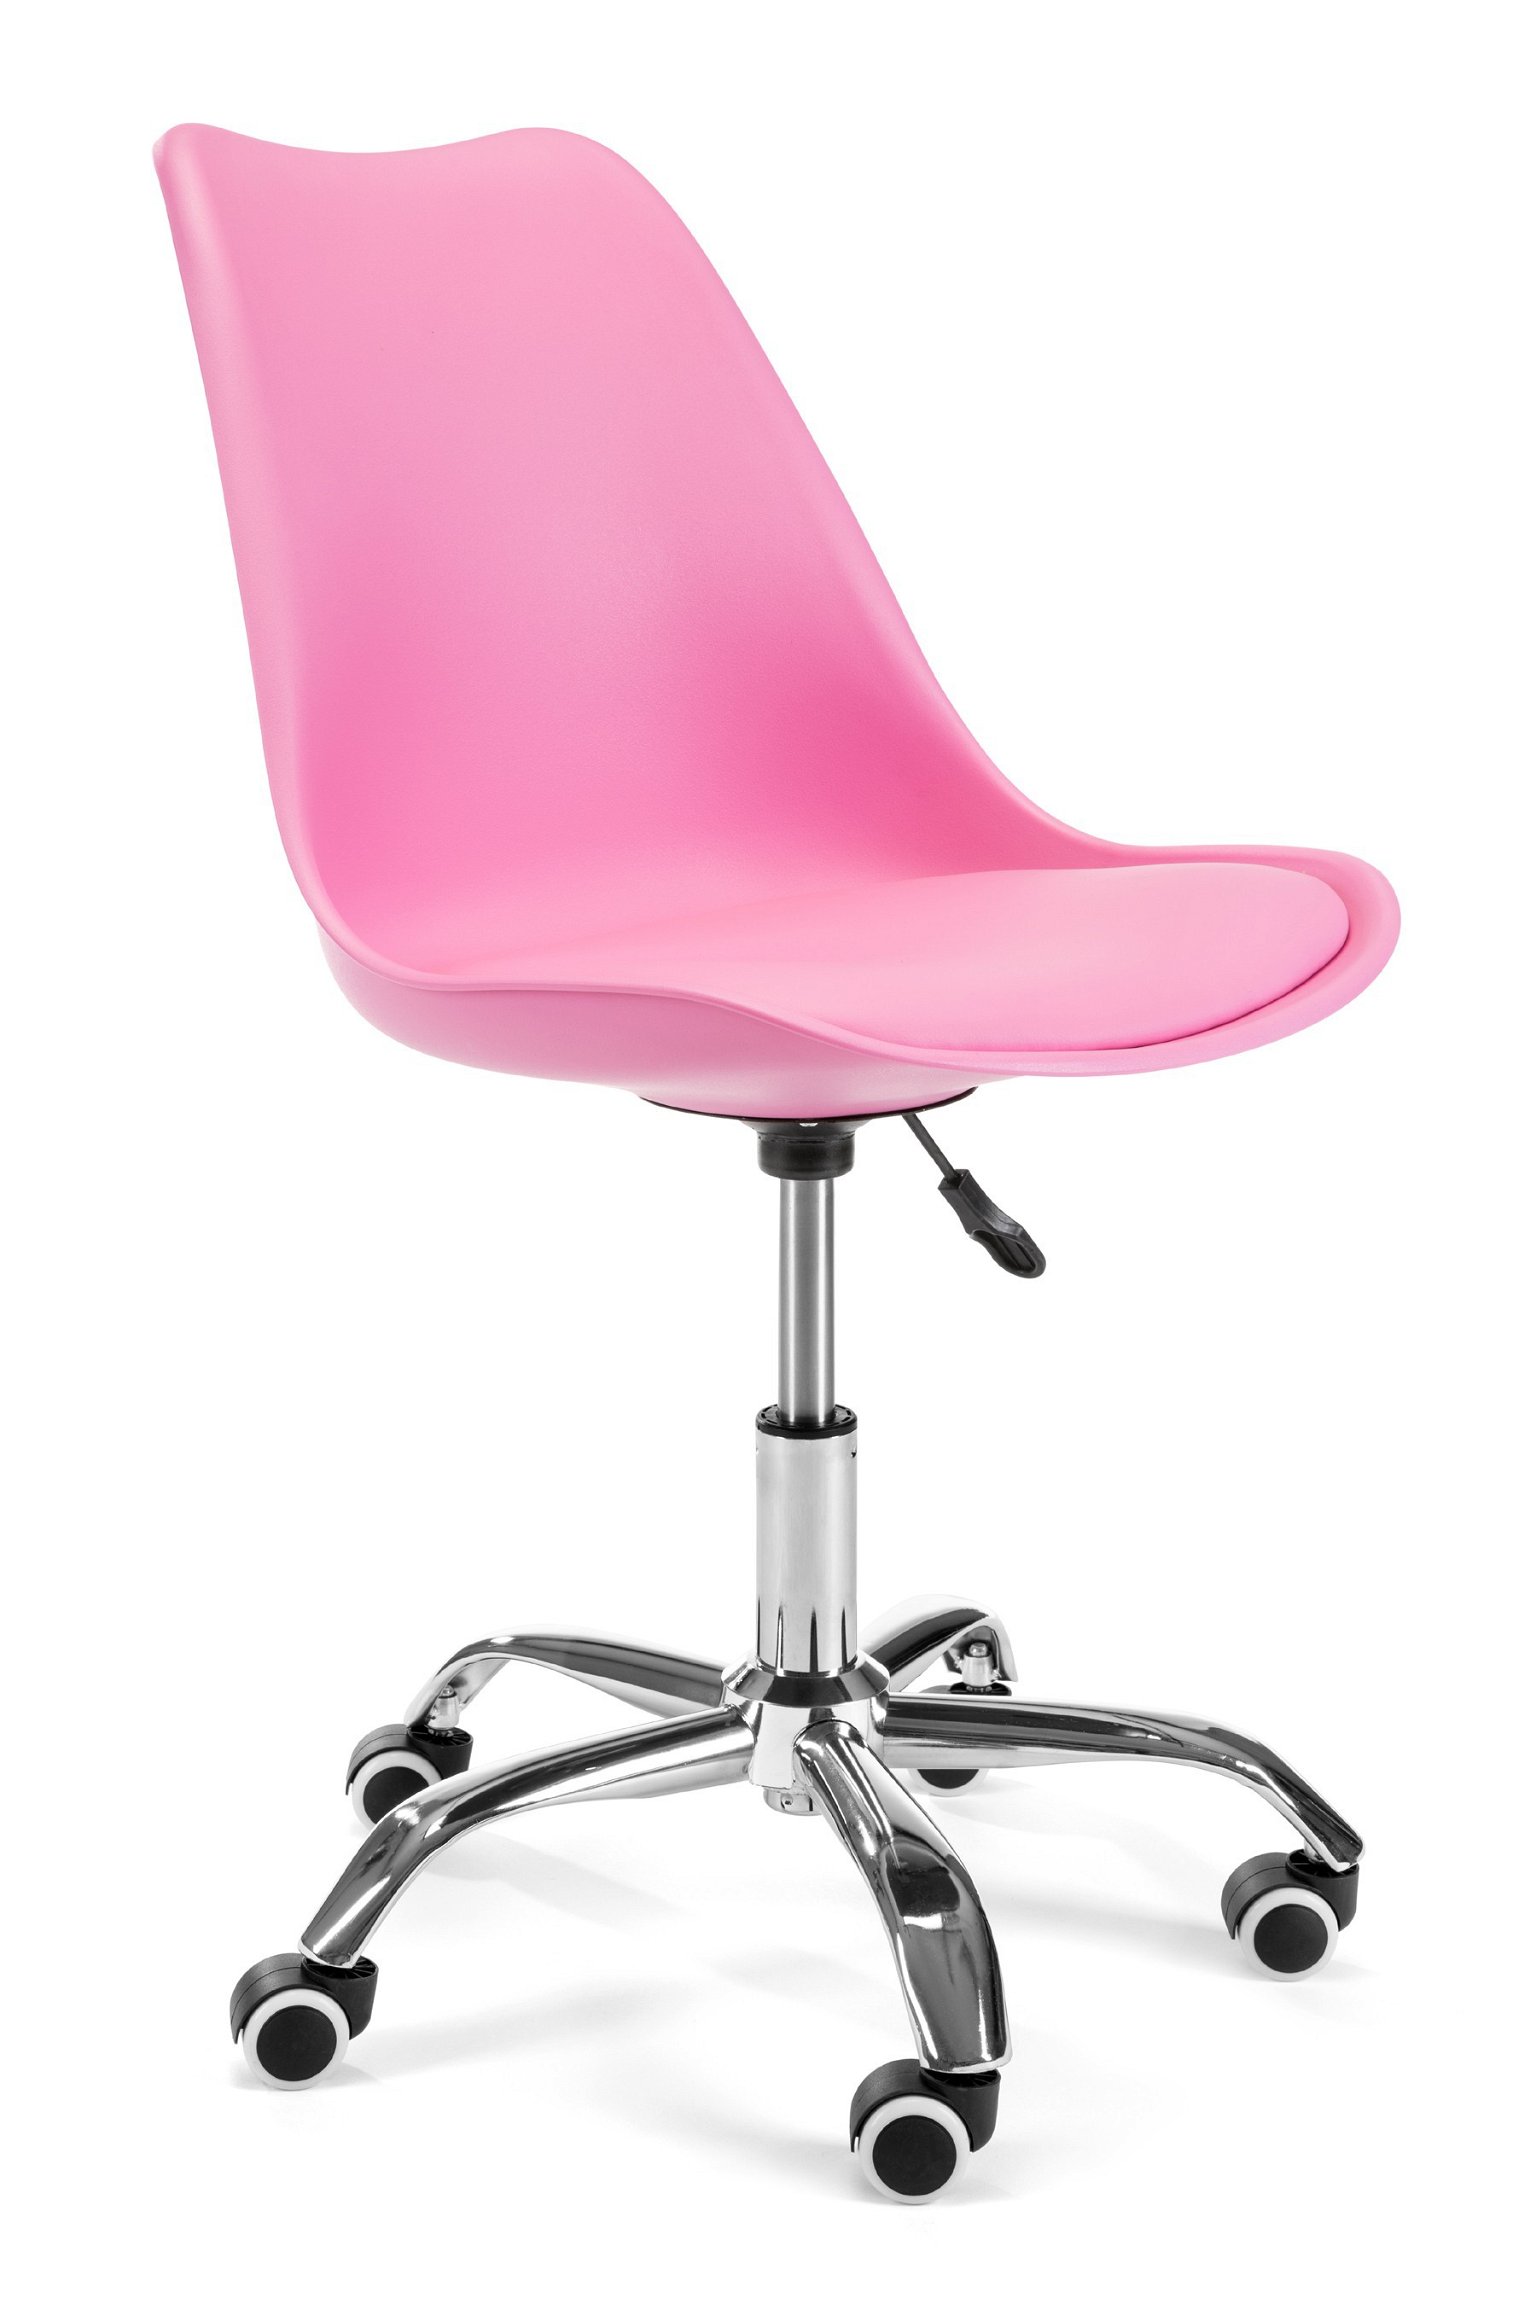 Vaikiška kėdė FD005, rožinė - 1